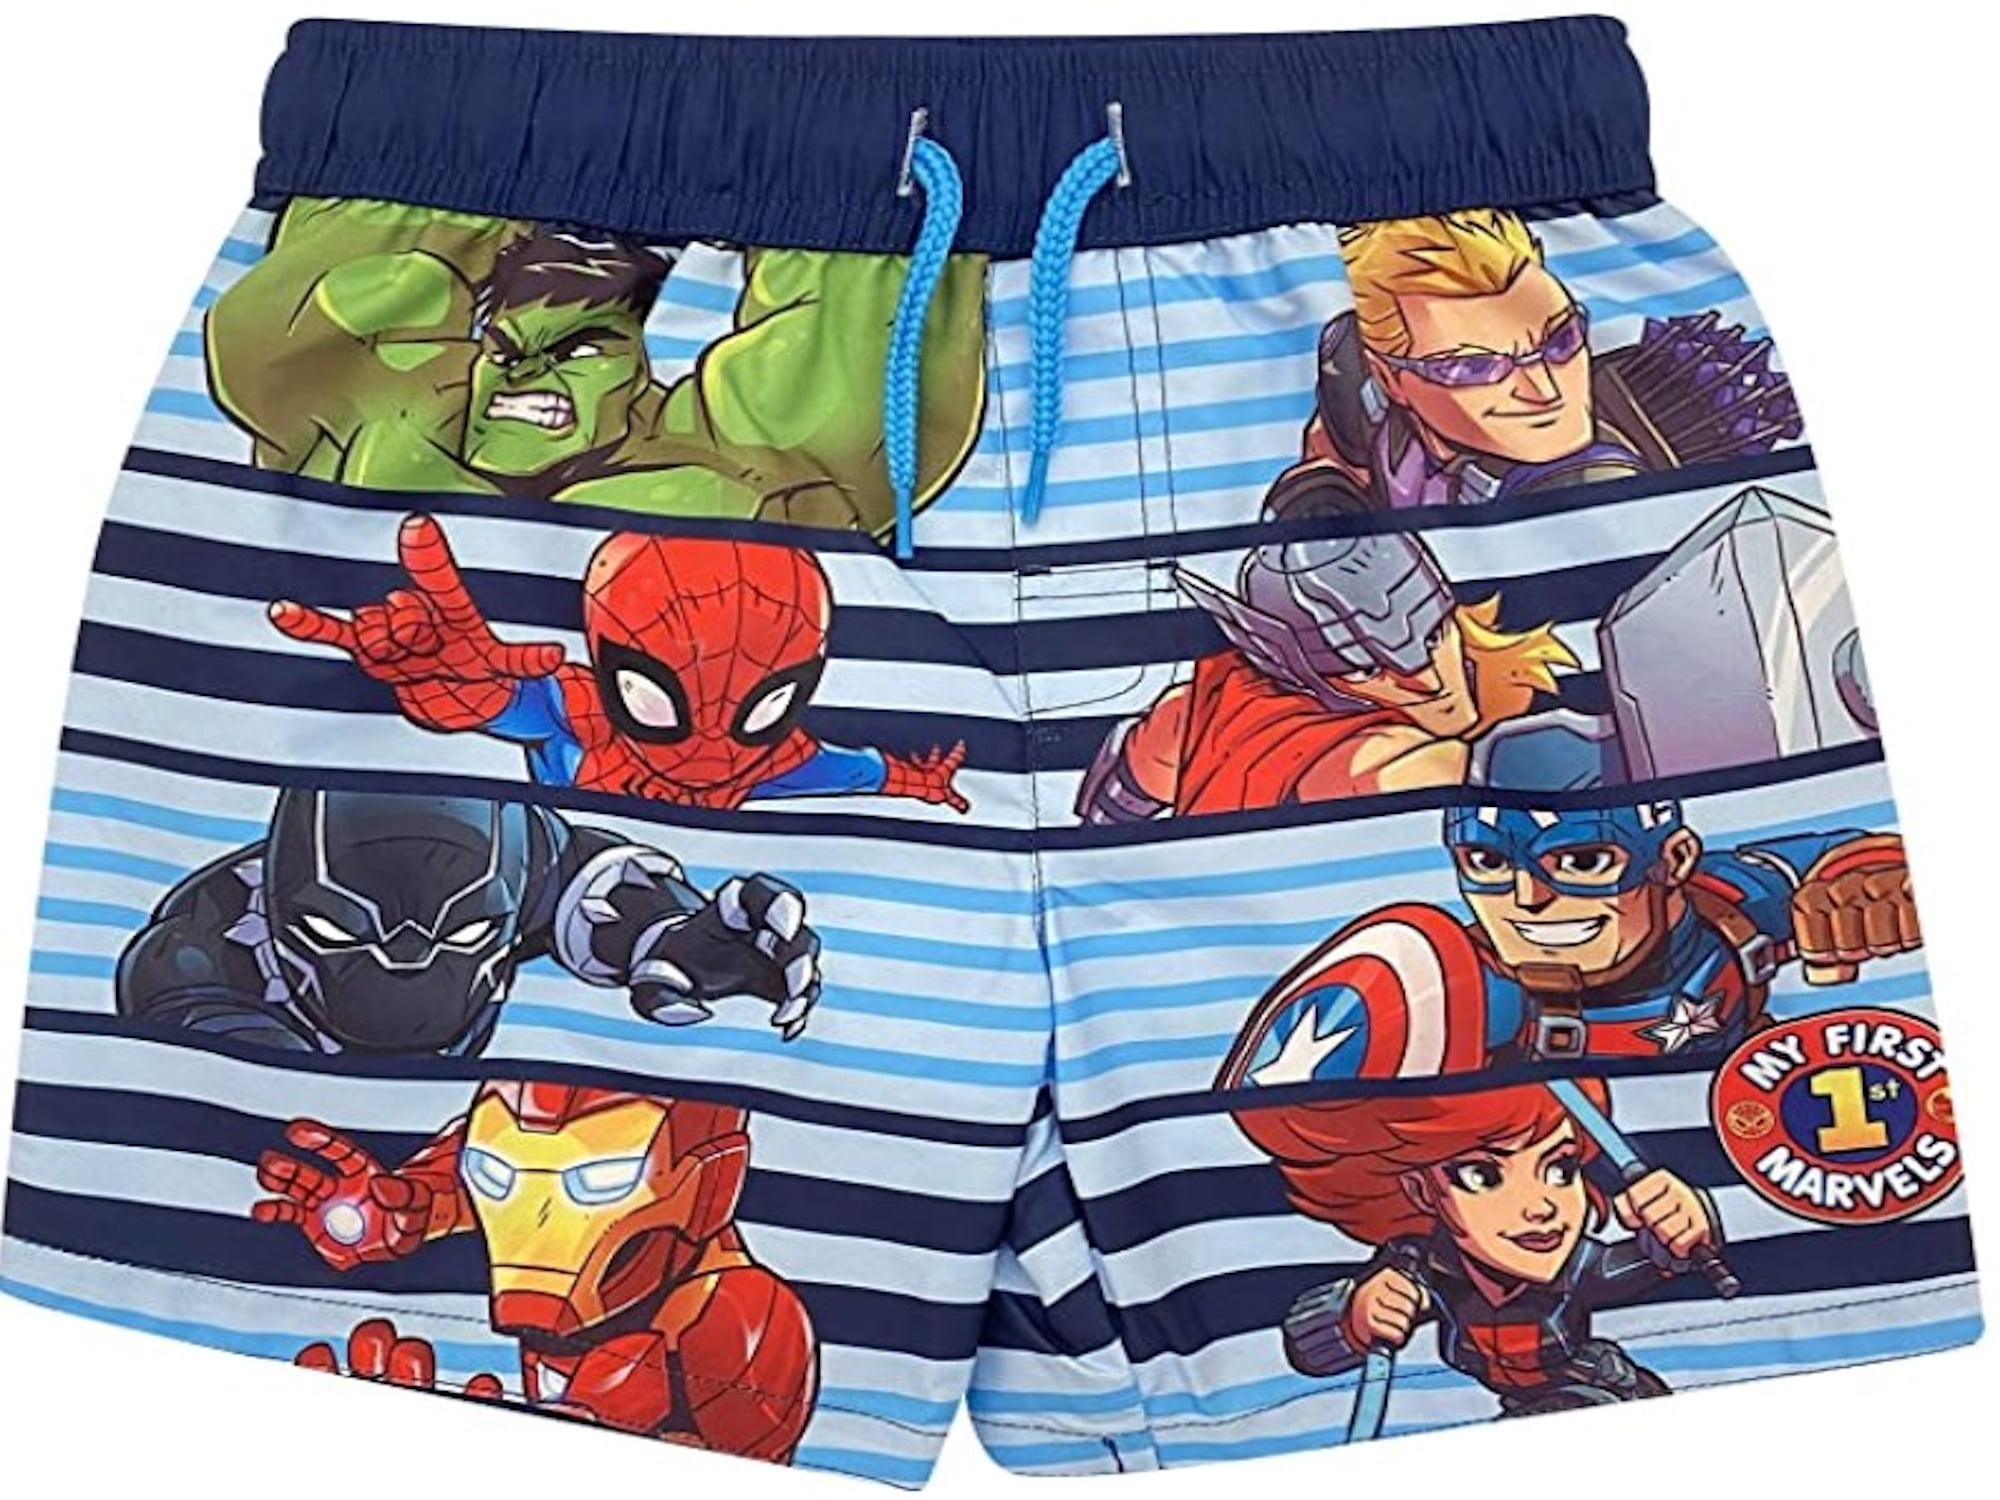 Marvel Avengers Toddler Boys Swim Trunk sizes 2T4T Blue